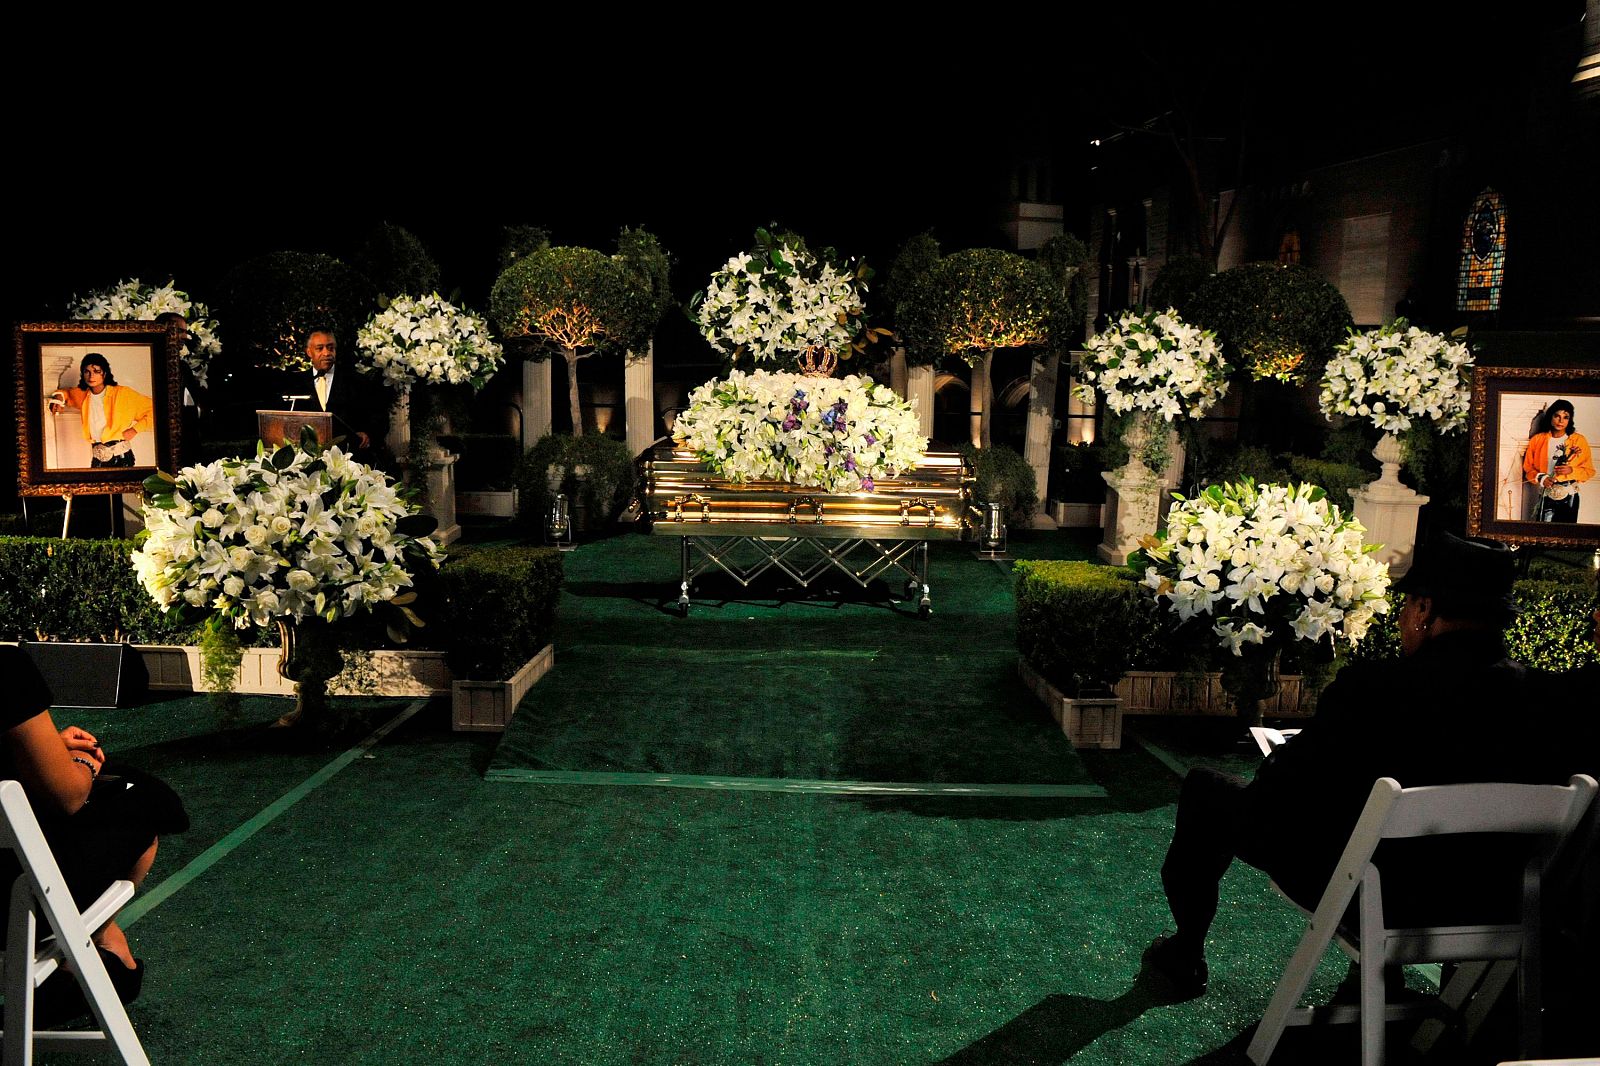 El entierro de Michael Jackson en imágenes